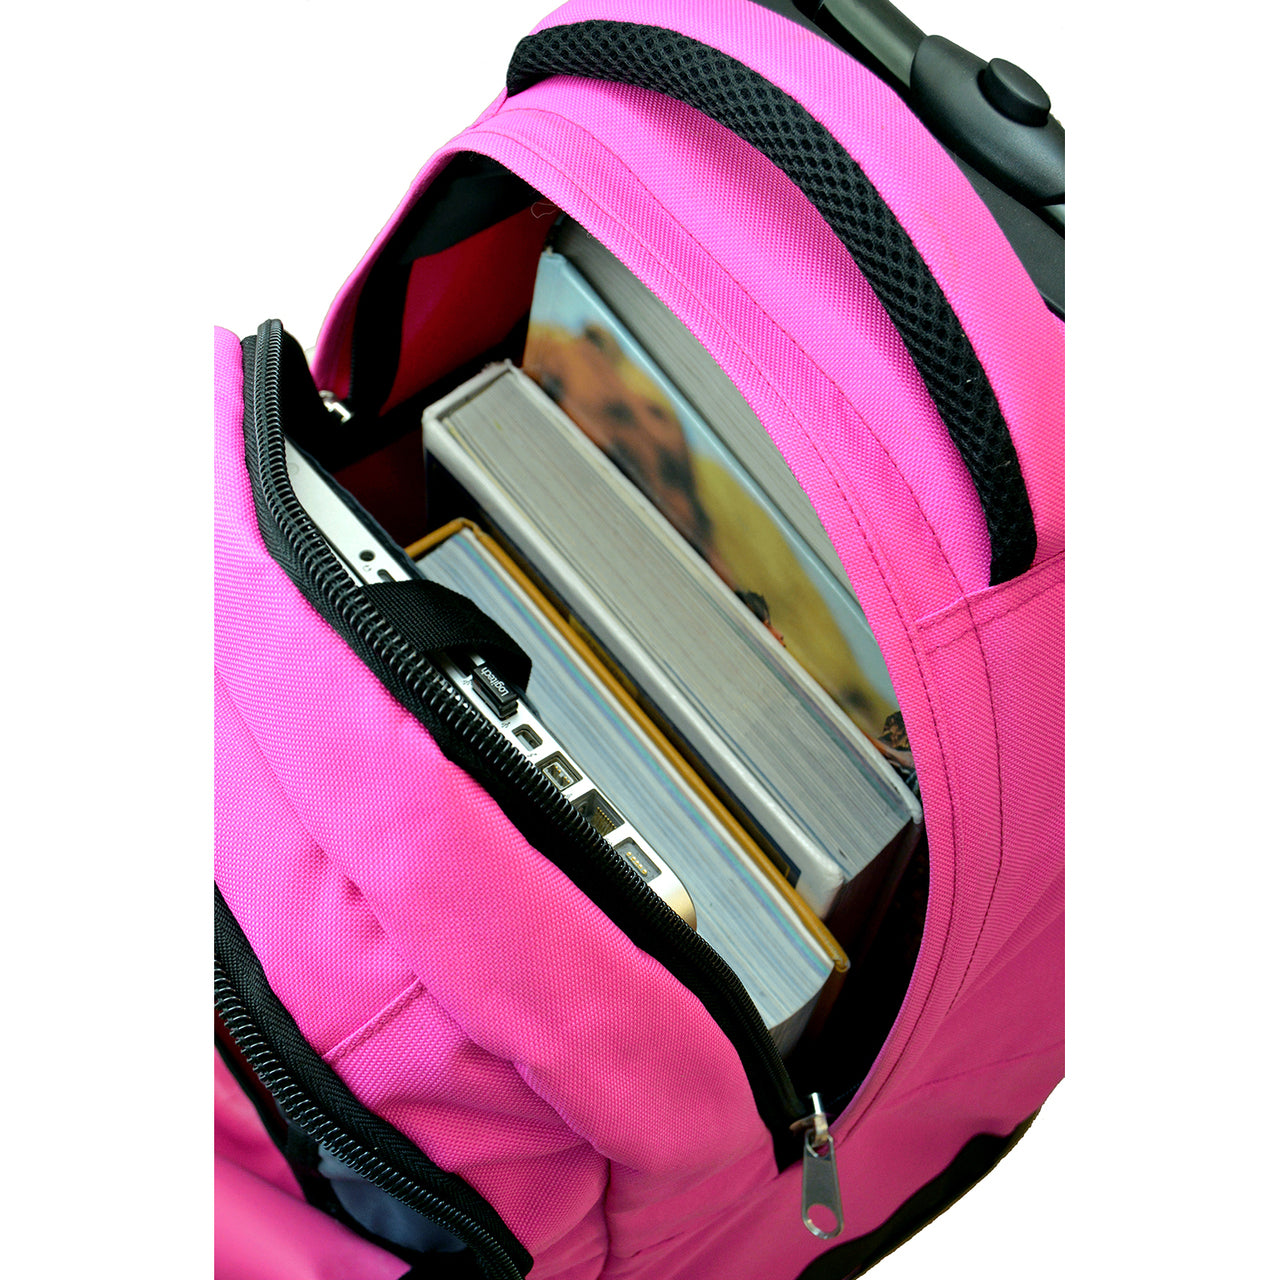 Auburn Premium Wheeled Backpack in Pink